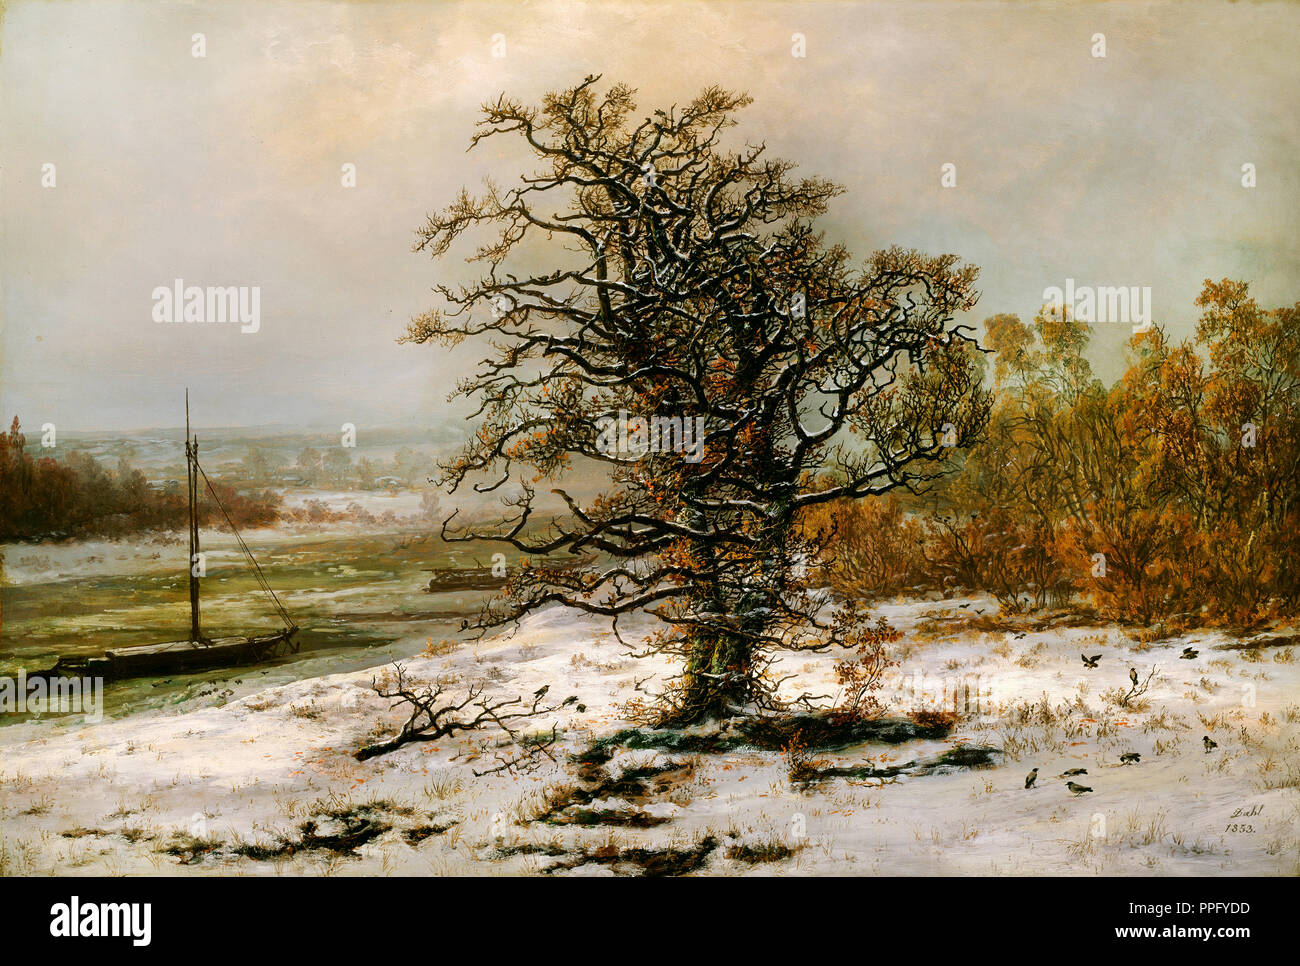 Johan Christian Dahl - Arbre de chêne de l'Elbe en hiver 1853 Huile sur toile. Galerie nationale de la Norvège, Oslo, Norvège. Banque D'Images